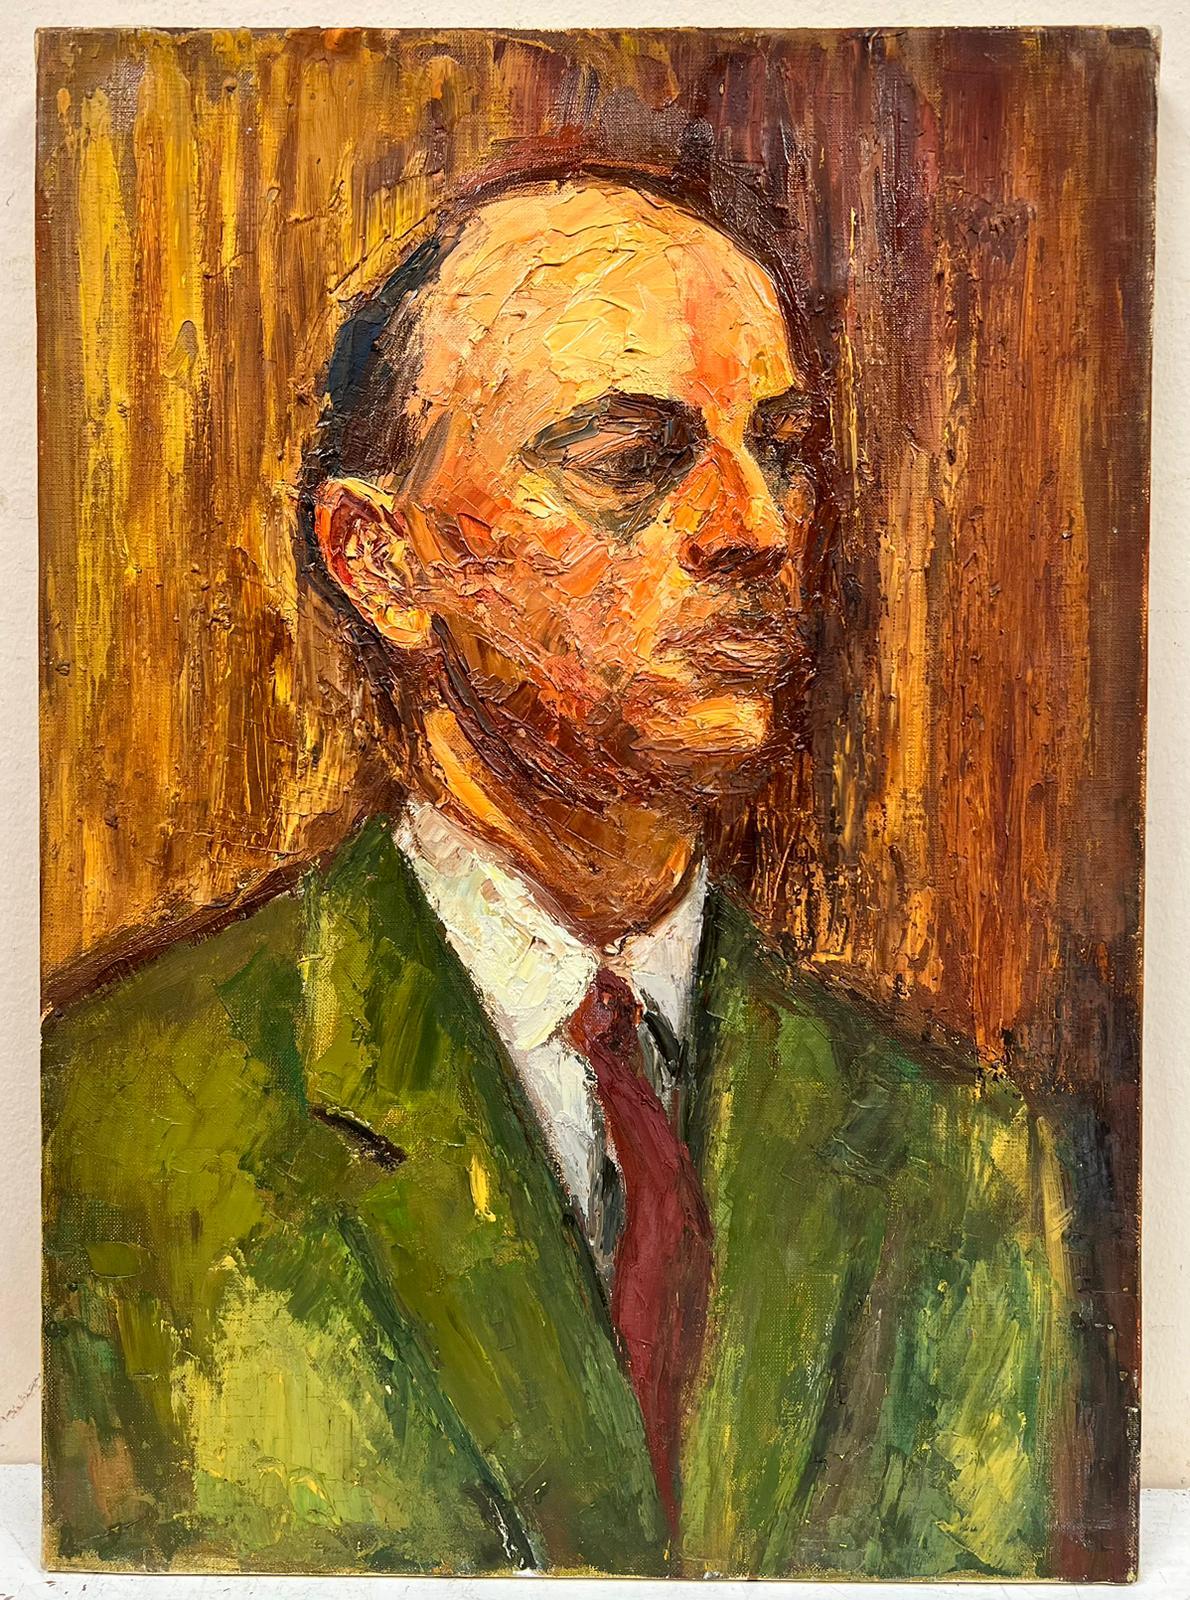 Portrait d'un homme en veste verte, huile sur toile, post impressionnisme français du milieu du siècle dernier - Painting de Josine Vignon